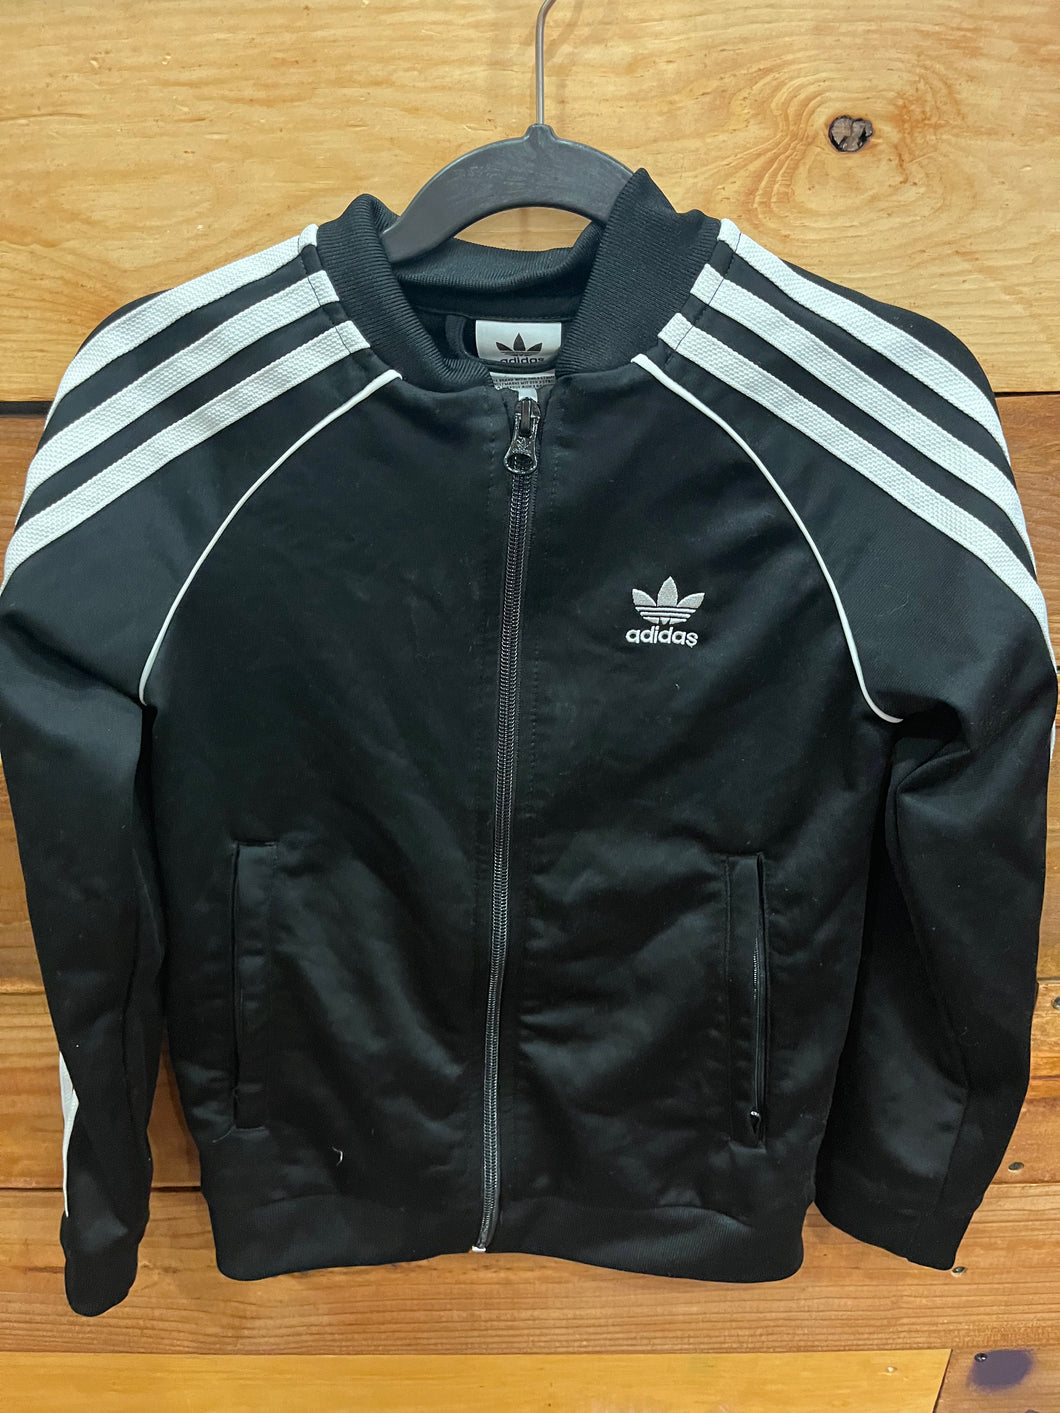 Adidas Black Jacket Size 7-8